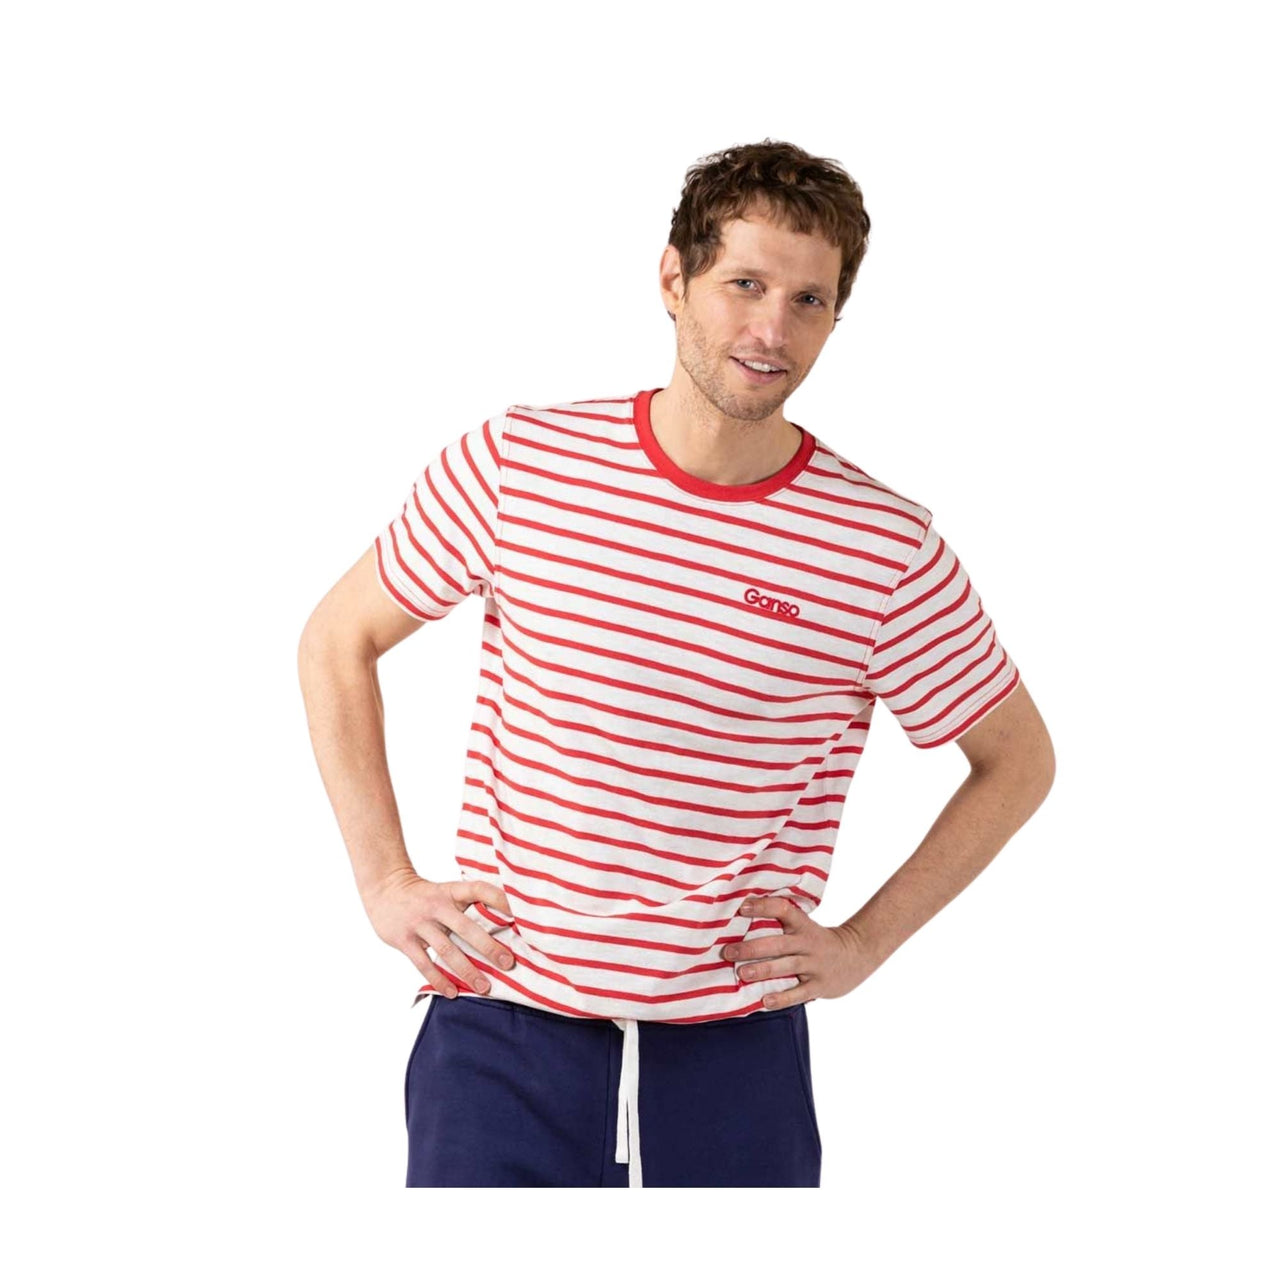 1100S220016 Camiseta el ganso camiseta raya roja fondo blanco - Medina Menswear®